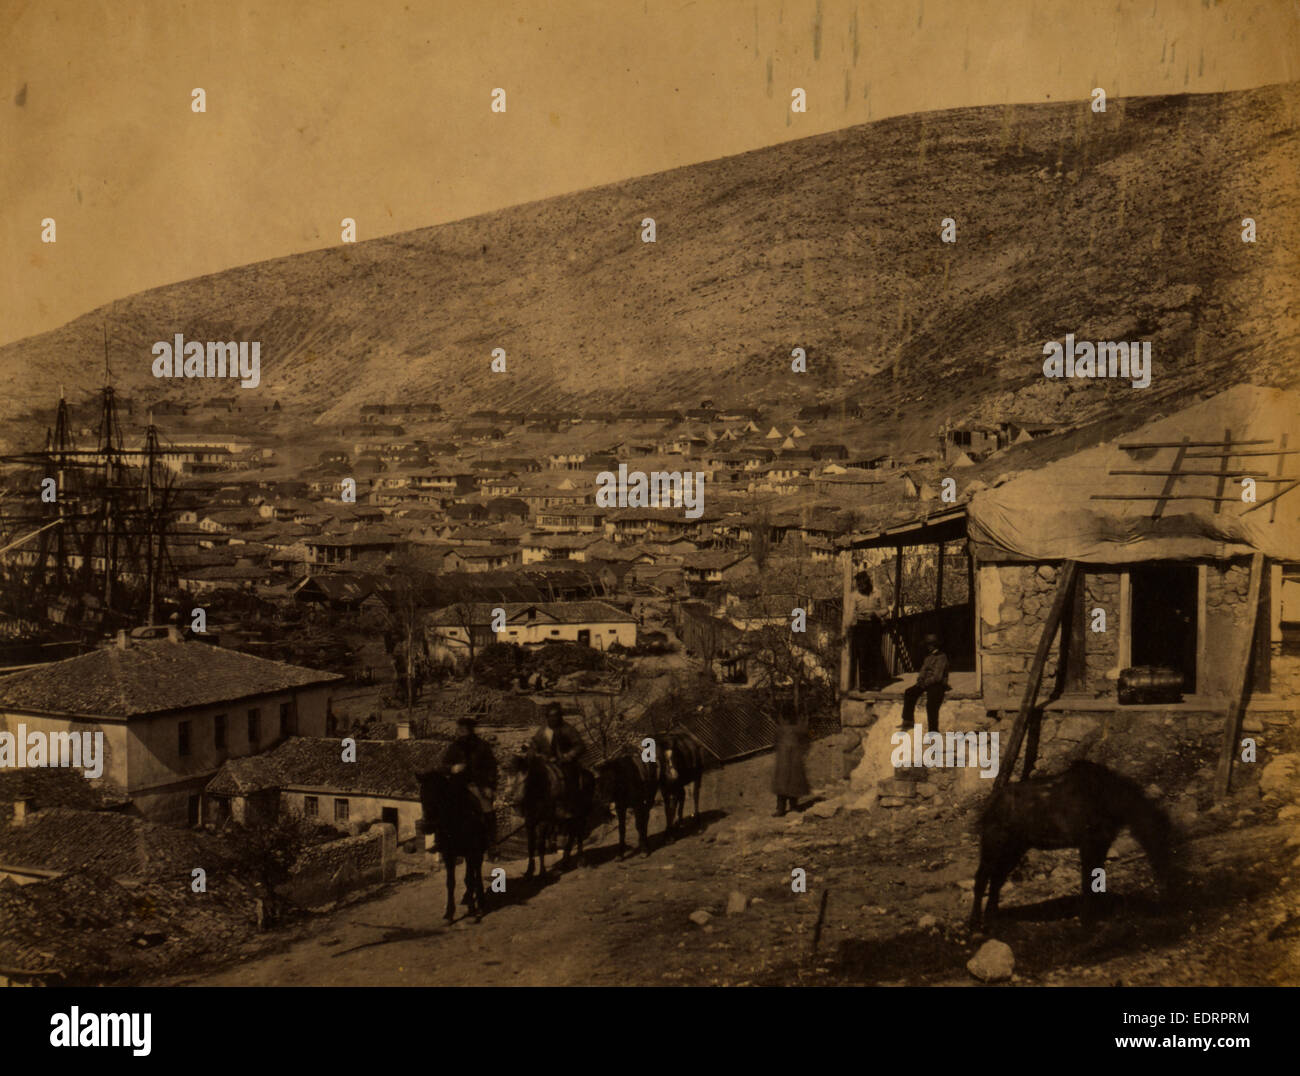 La ville de Balaklava, guerre de Crimée, 1853-1856, Roger Fenton guerre historique photo de la campagne Banque D'Images